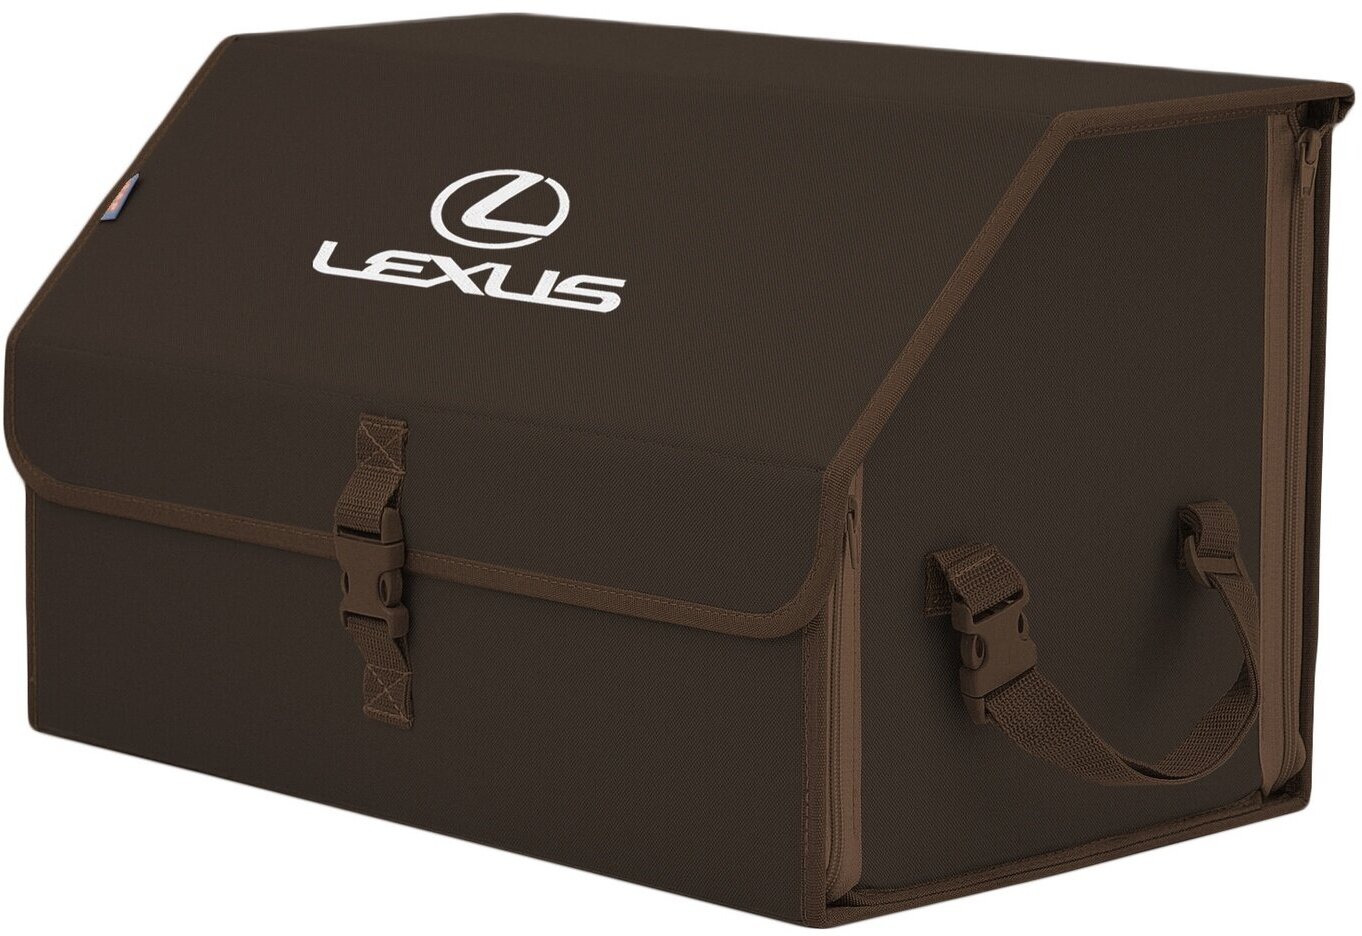 Органайзер-саквояж в багажник "Союз" (размер L). Цвет: коричневый с вышивкой Lexus (Лексус).